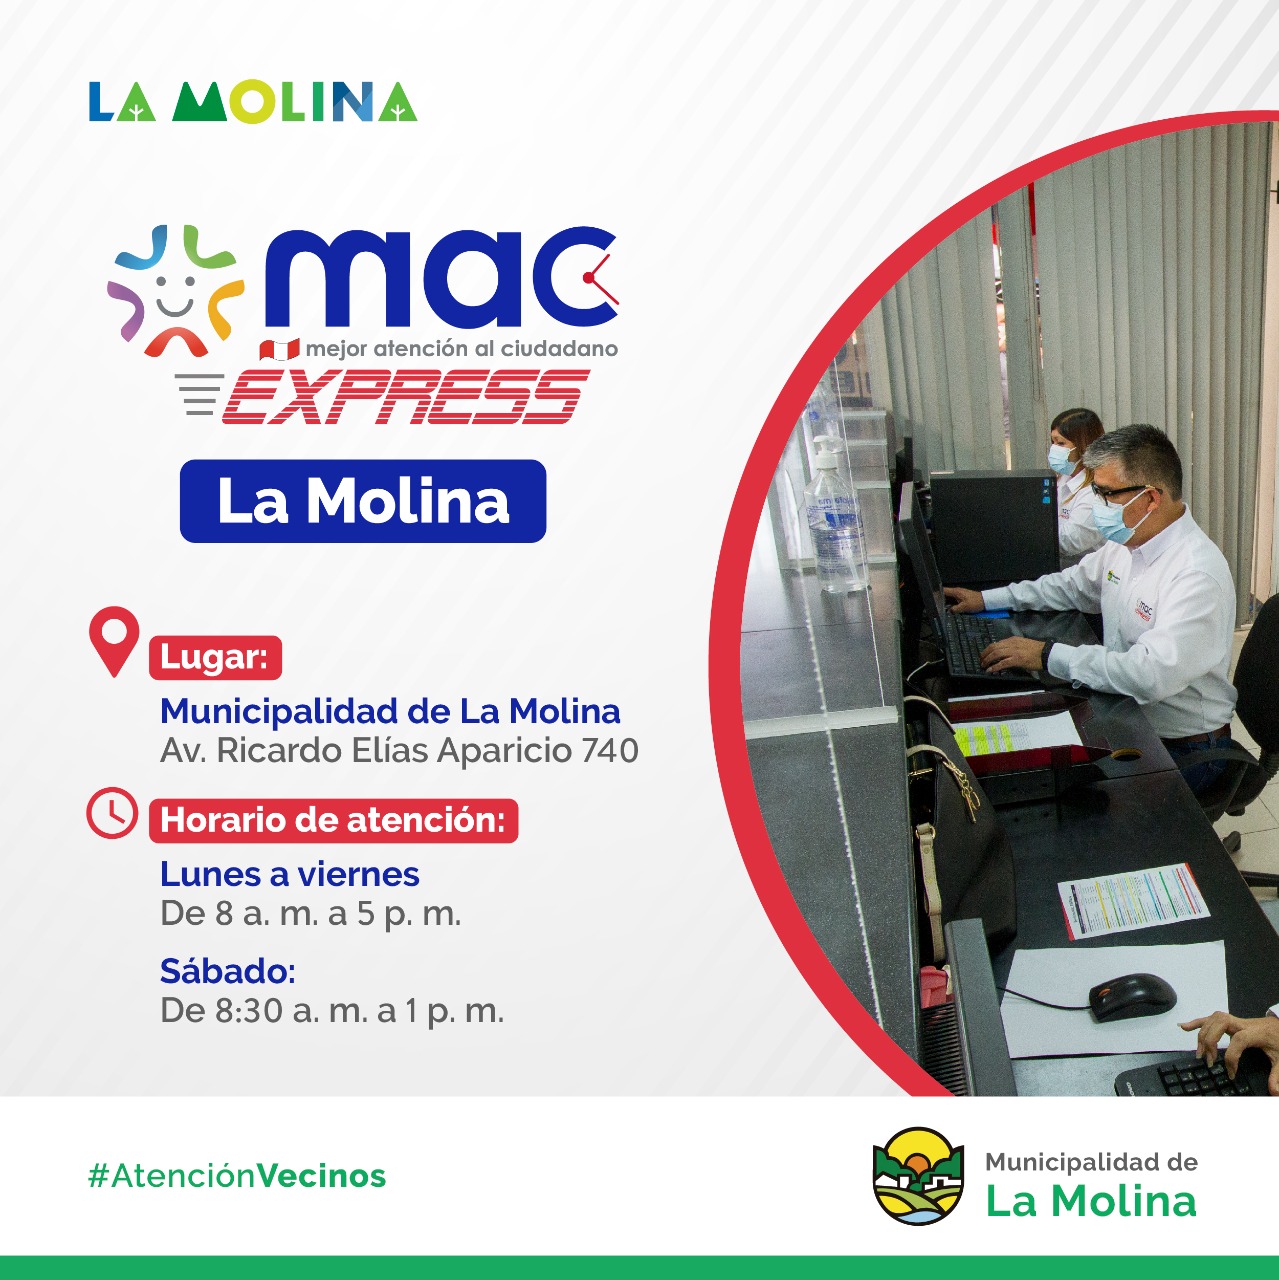 MAC EXPRESS LA MOLINARealiza hasta 35 trámites en el nuevo Mac Express que está ubicado en la municipalidad de La Molina. Los esperamos de lunes a viernes de 8 a. m. a 5 p. m. y los sábados de 8:30 a. m. a 1 p. m.